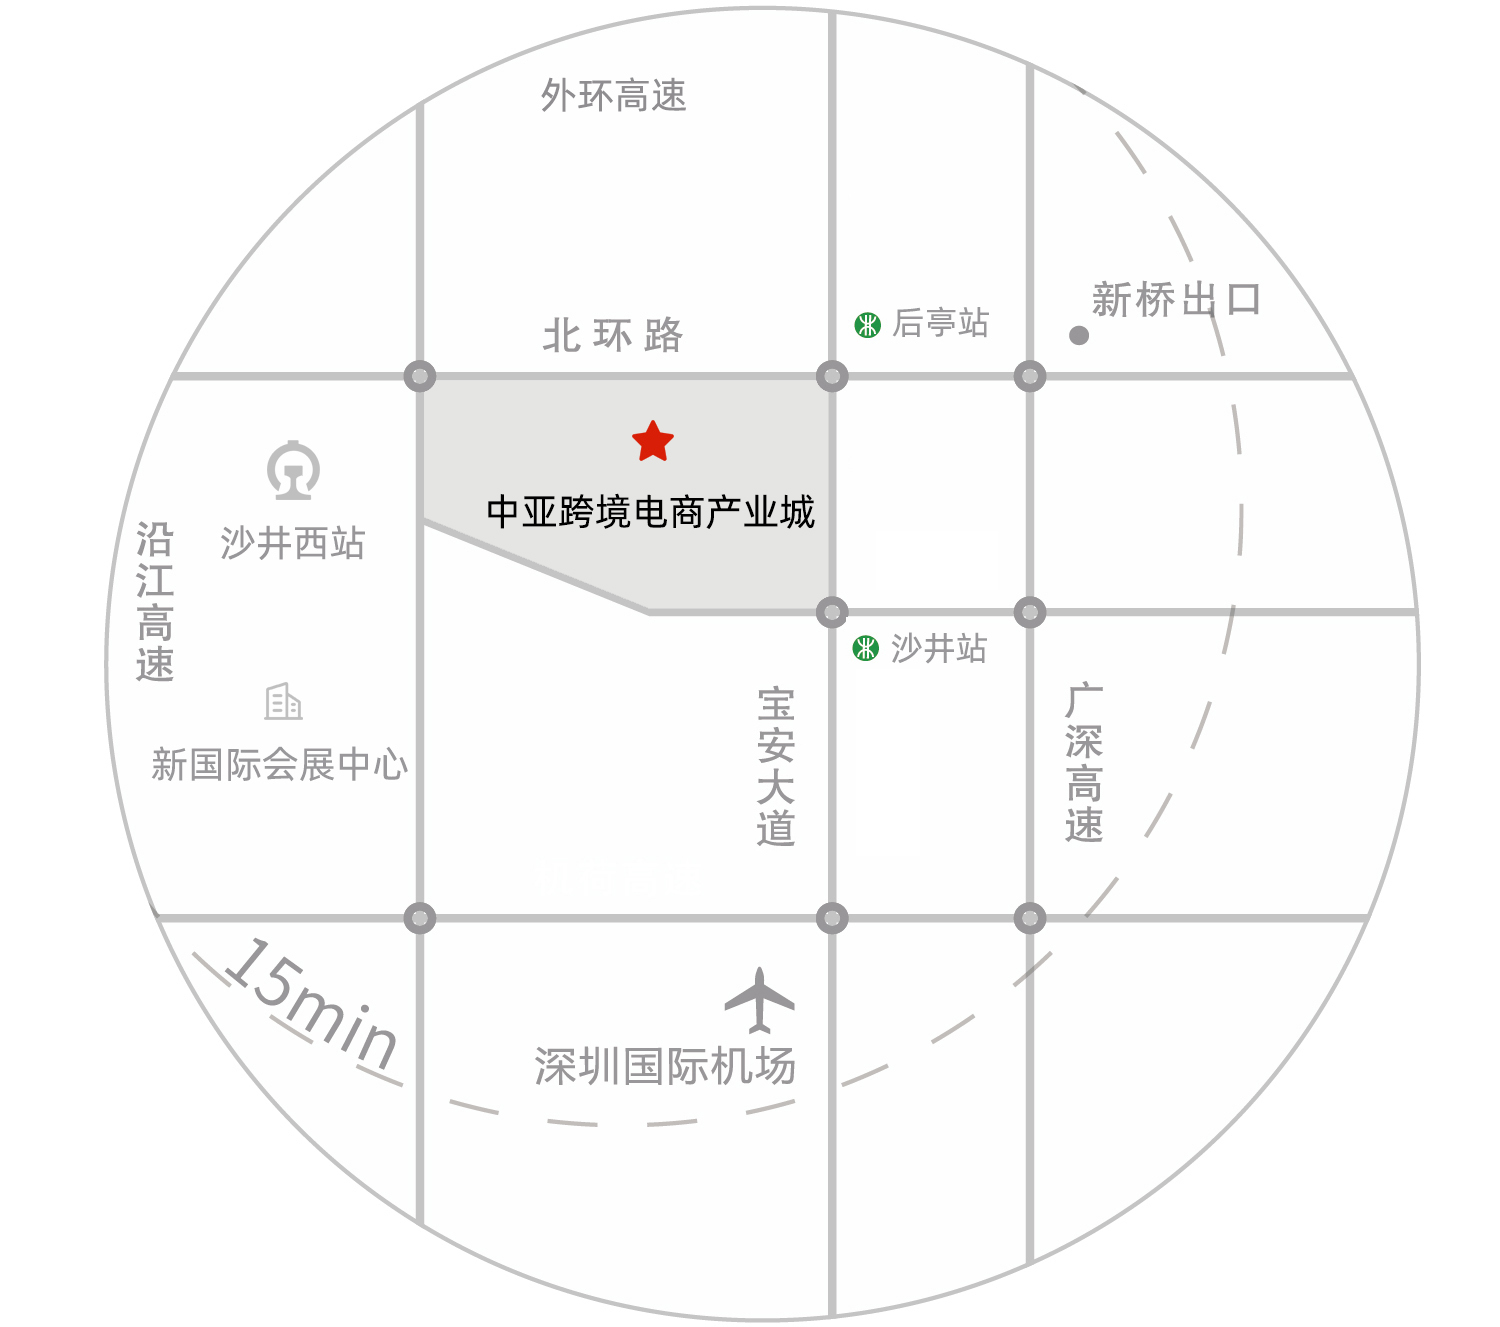 中亚国际跨境电商产业城平面图